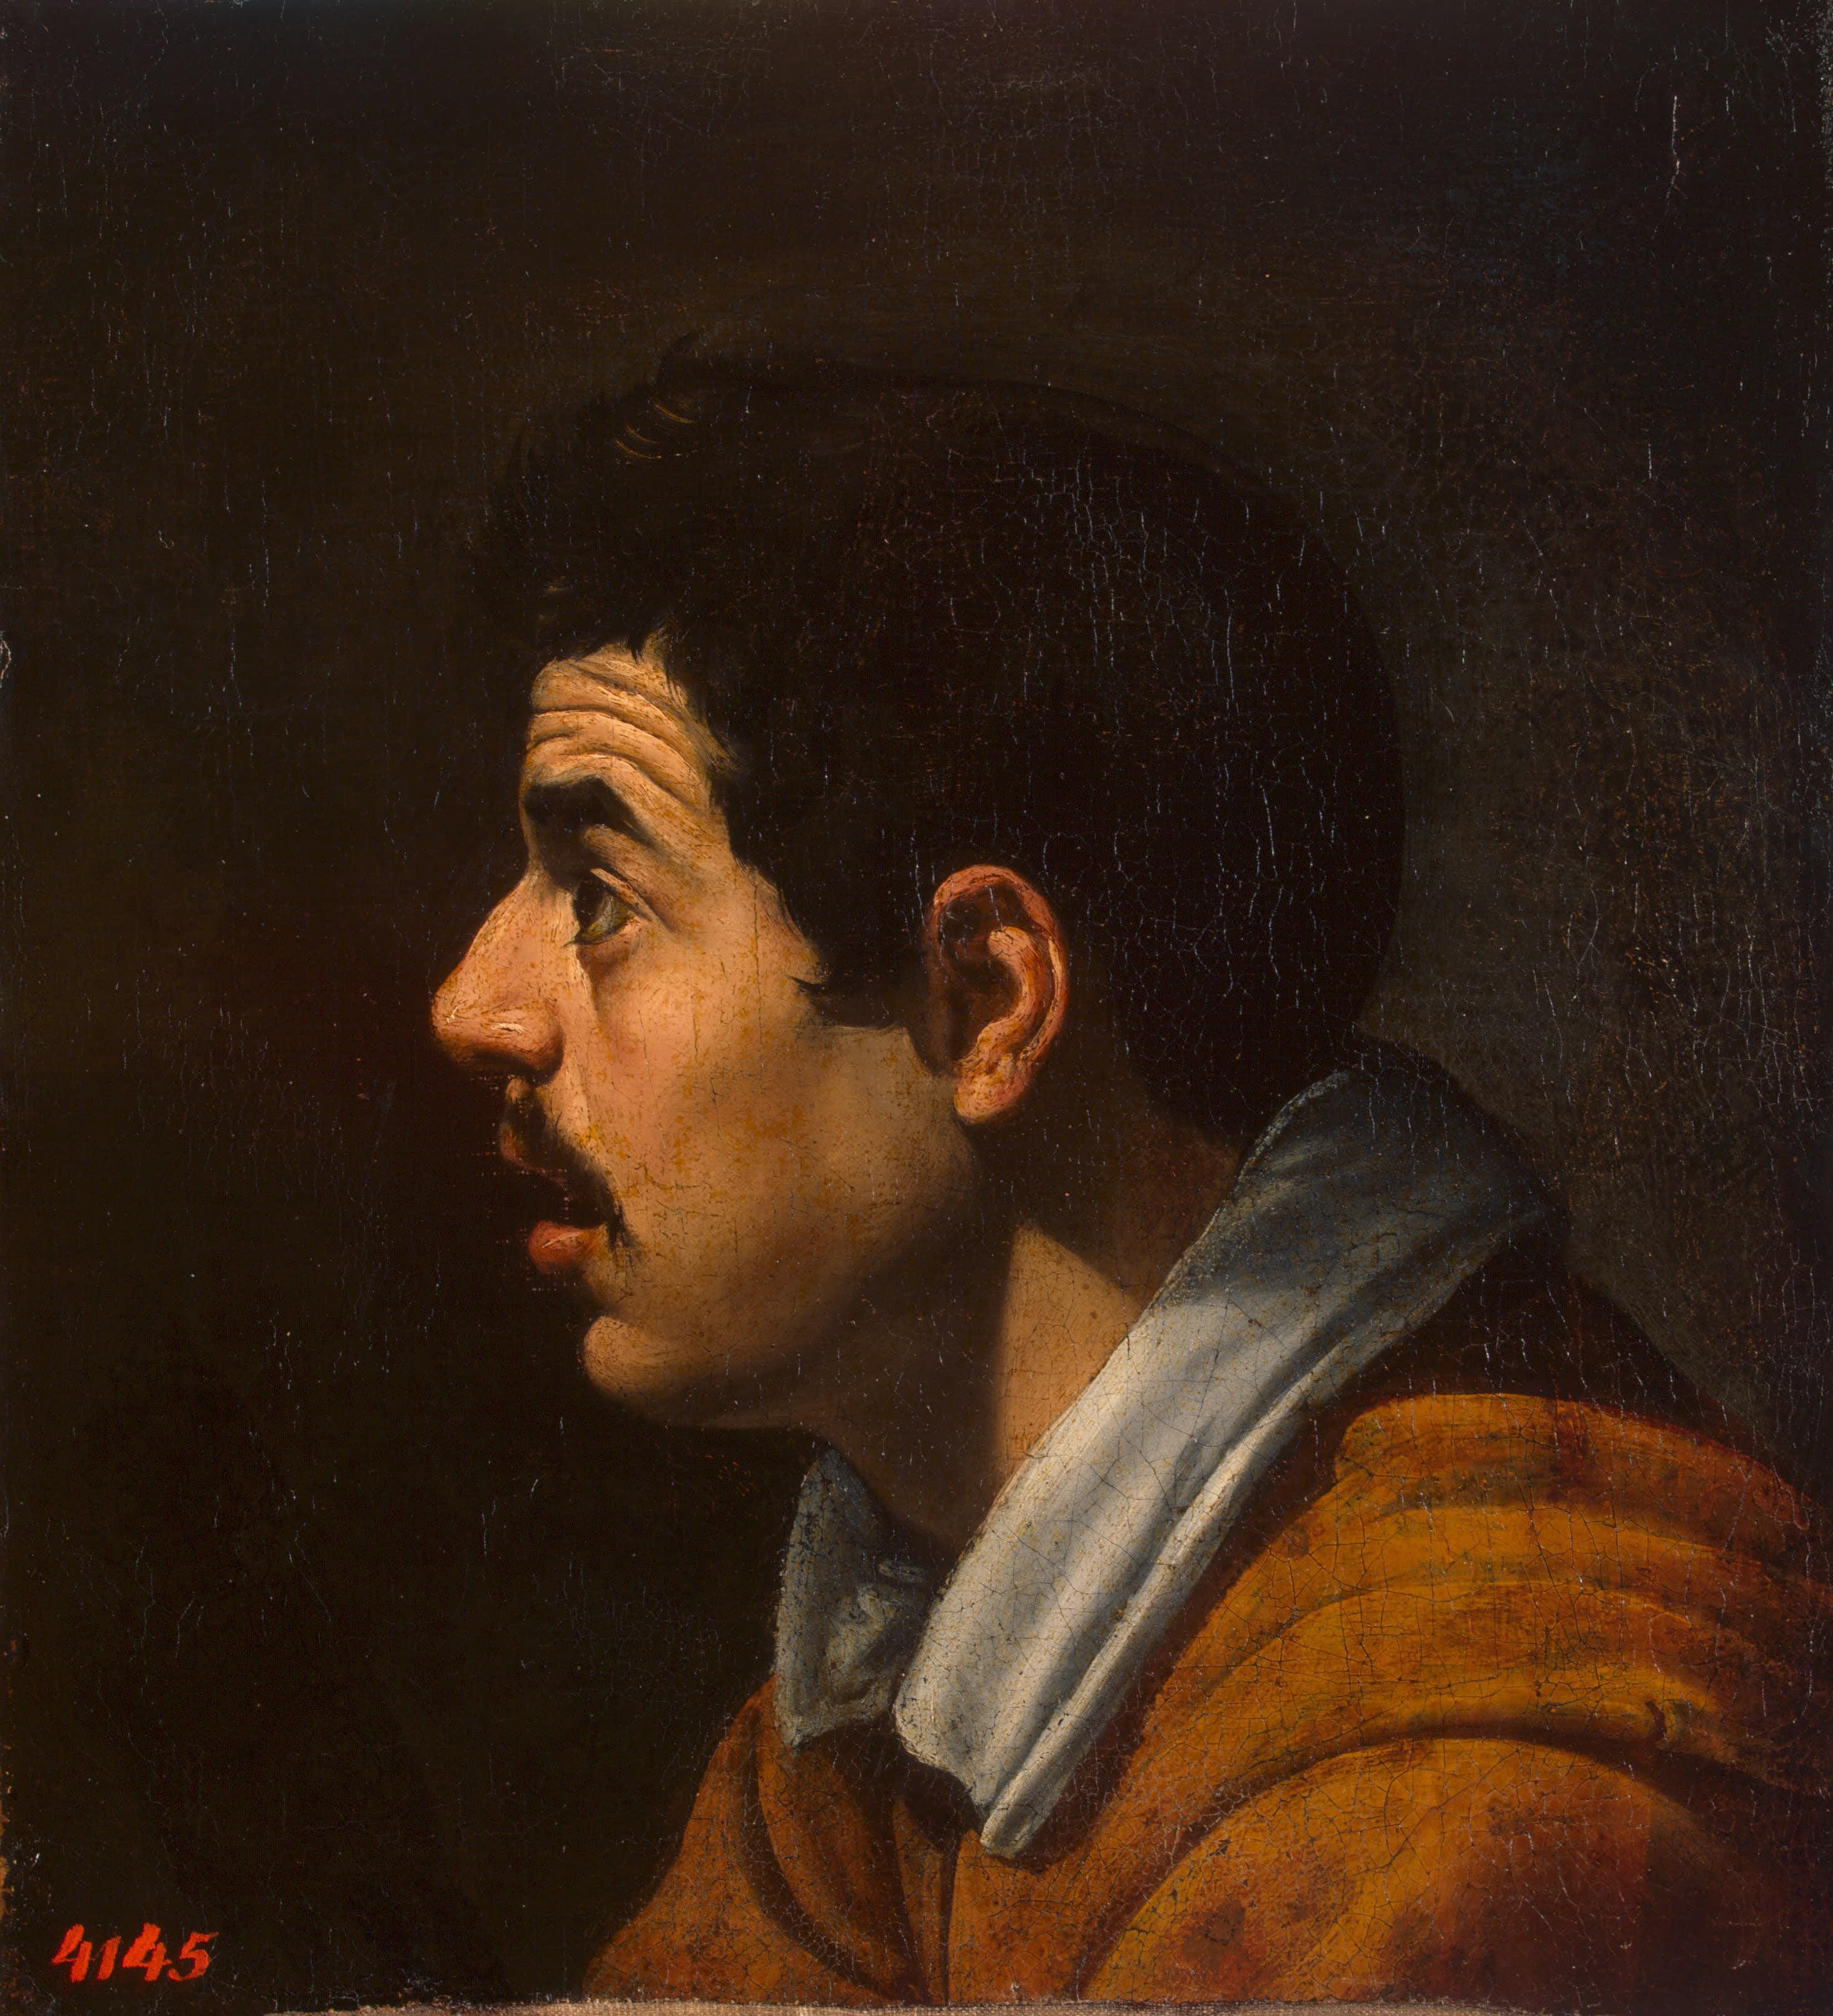 Диего Веласкес де Сильва. "Мужская голова в профиль". Около 1616-1617. Эрмитаж, Санкт-Петербург.